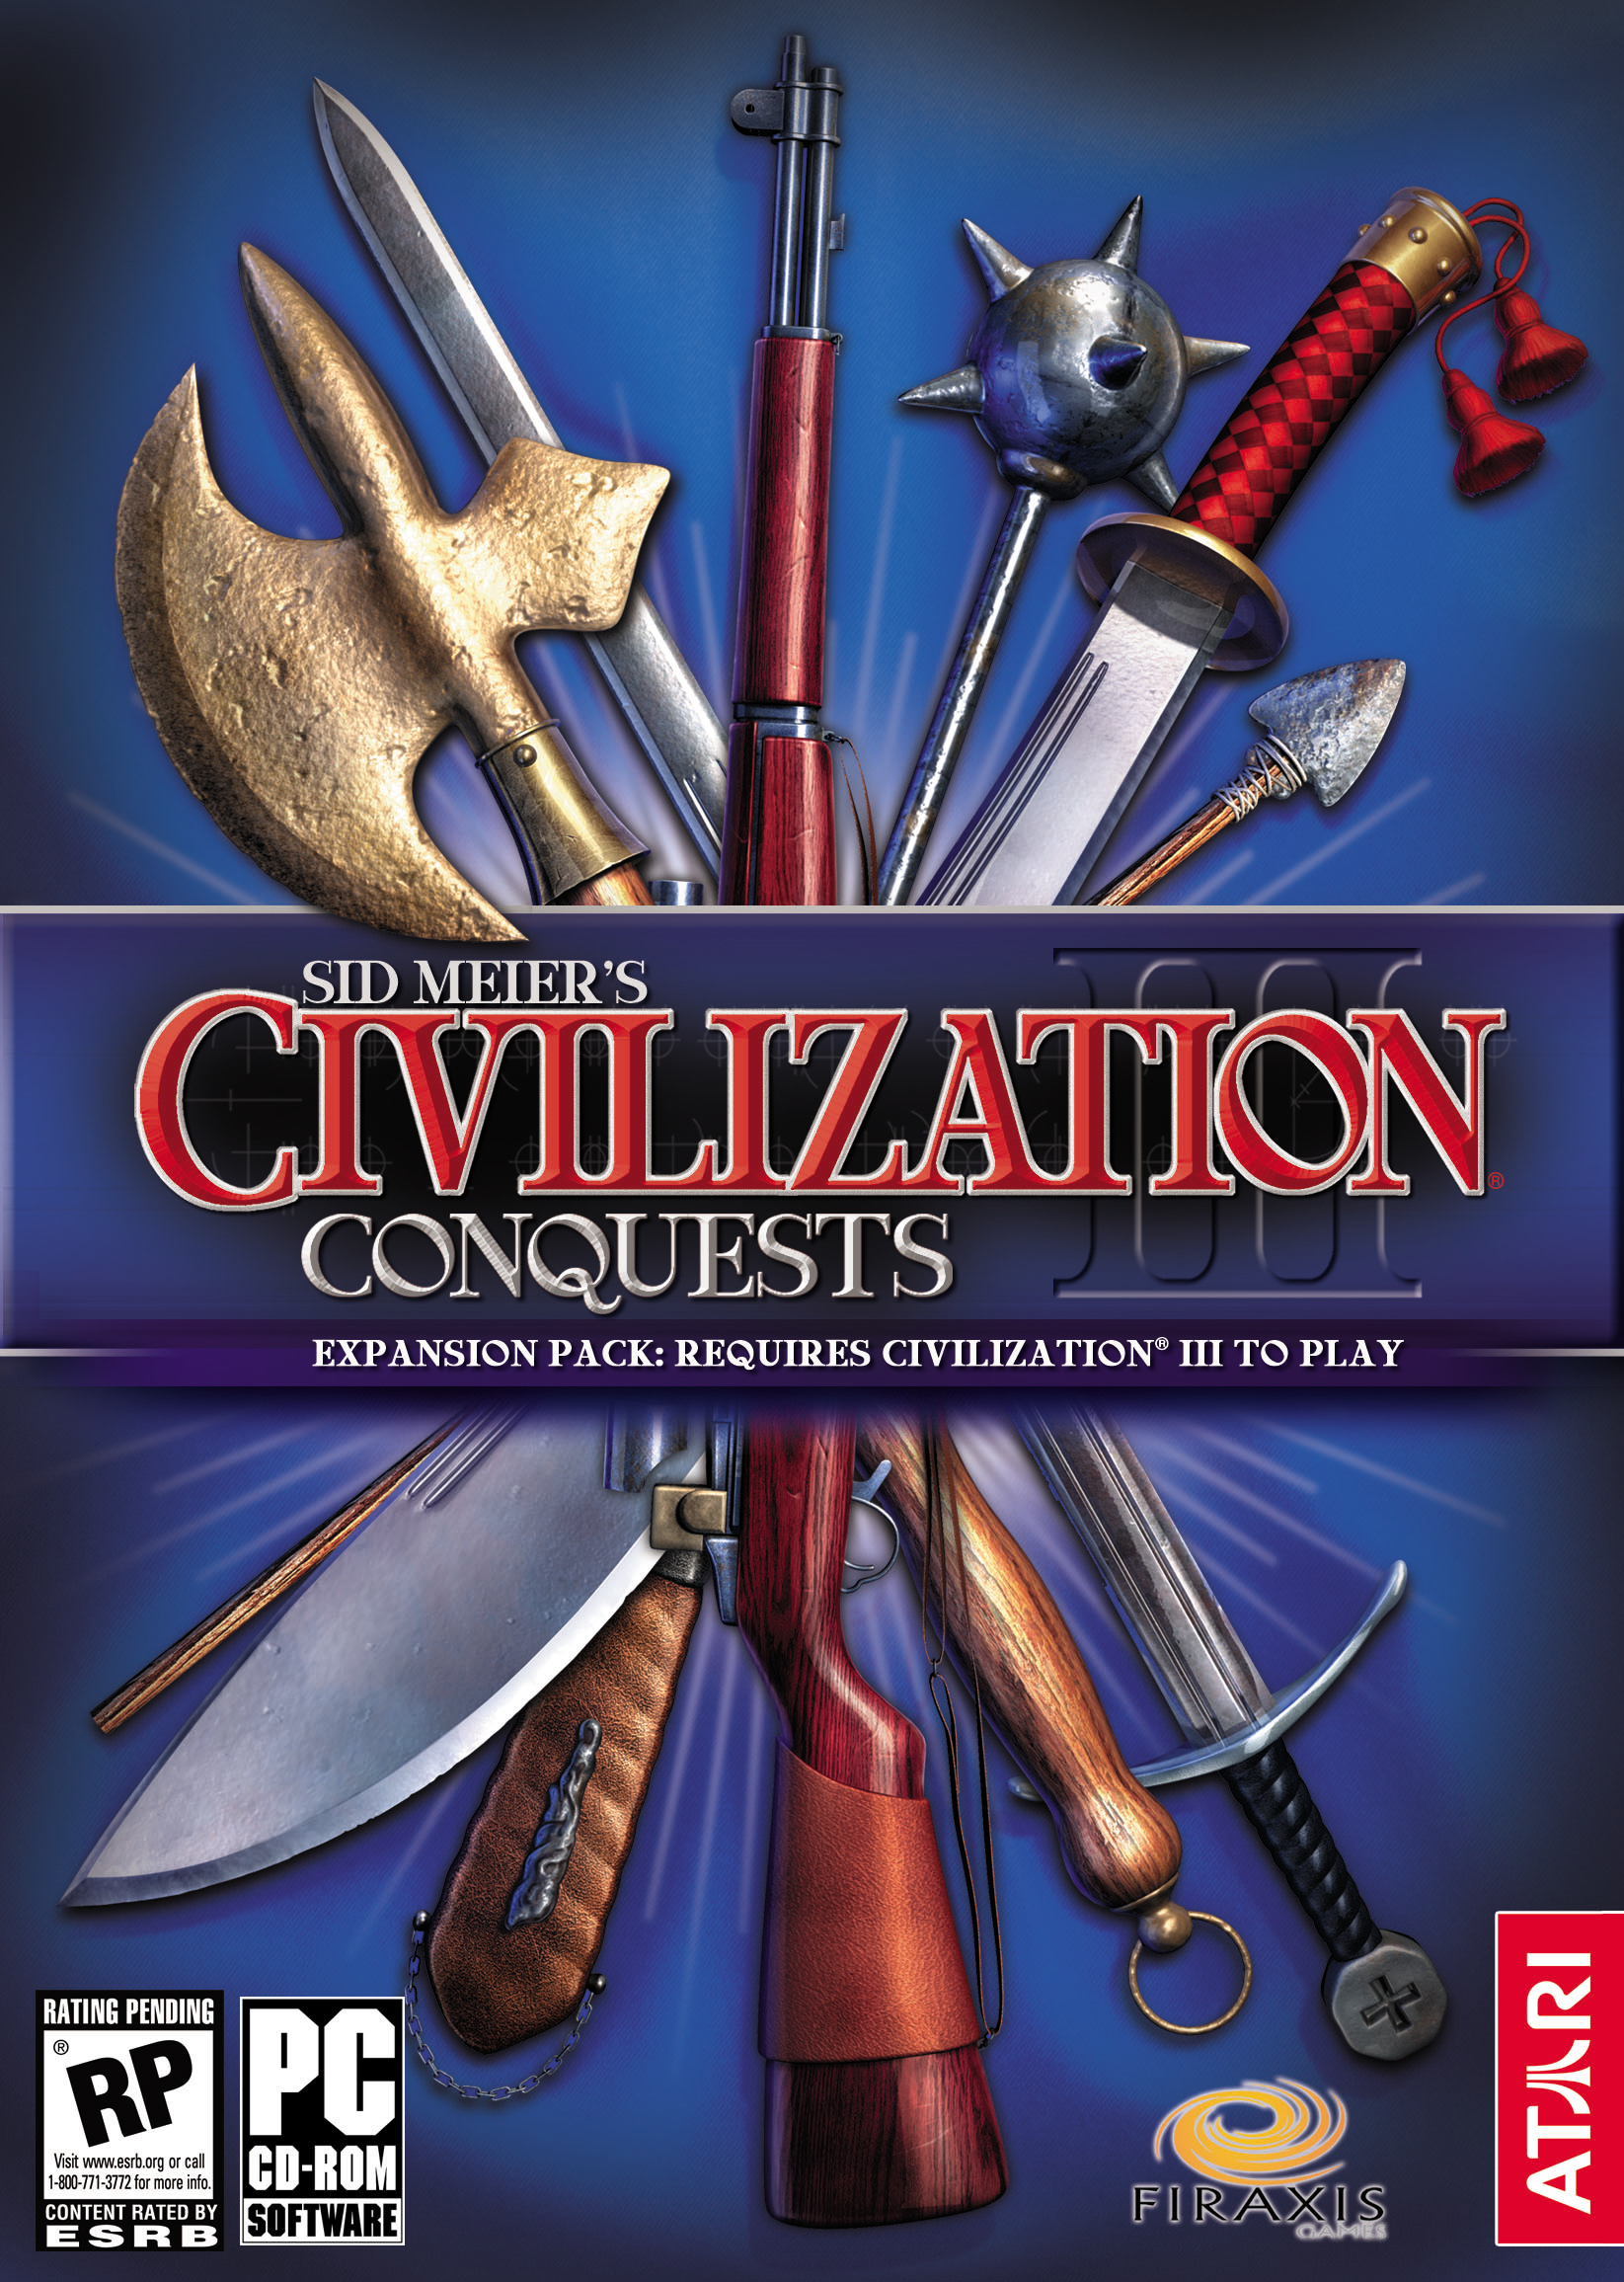 Sid Meier’s Civilization III downloading